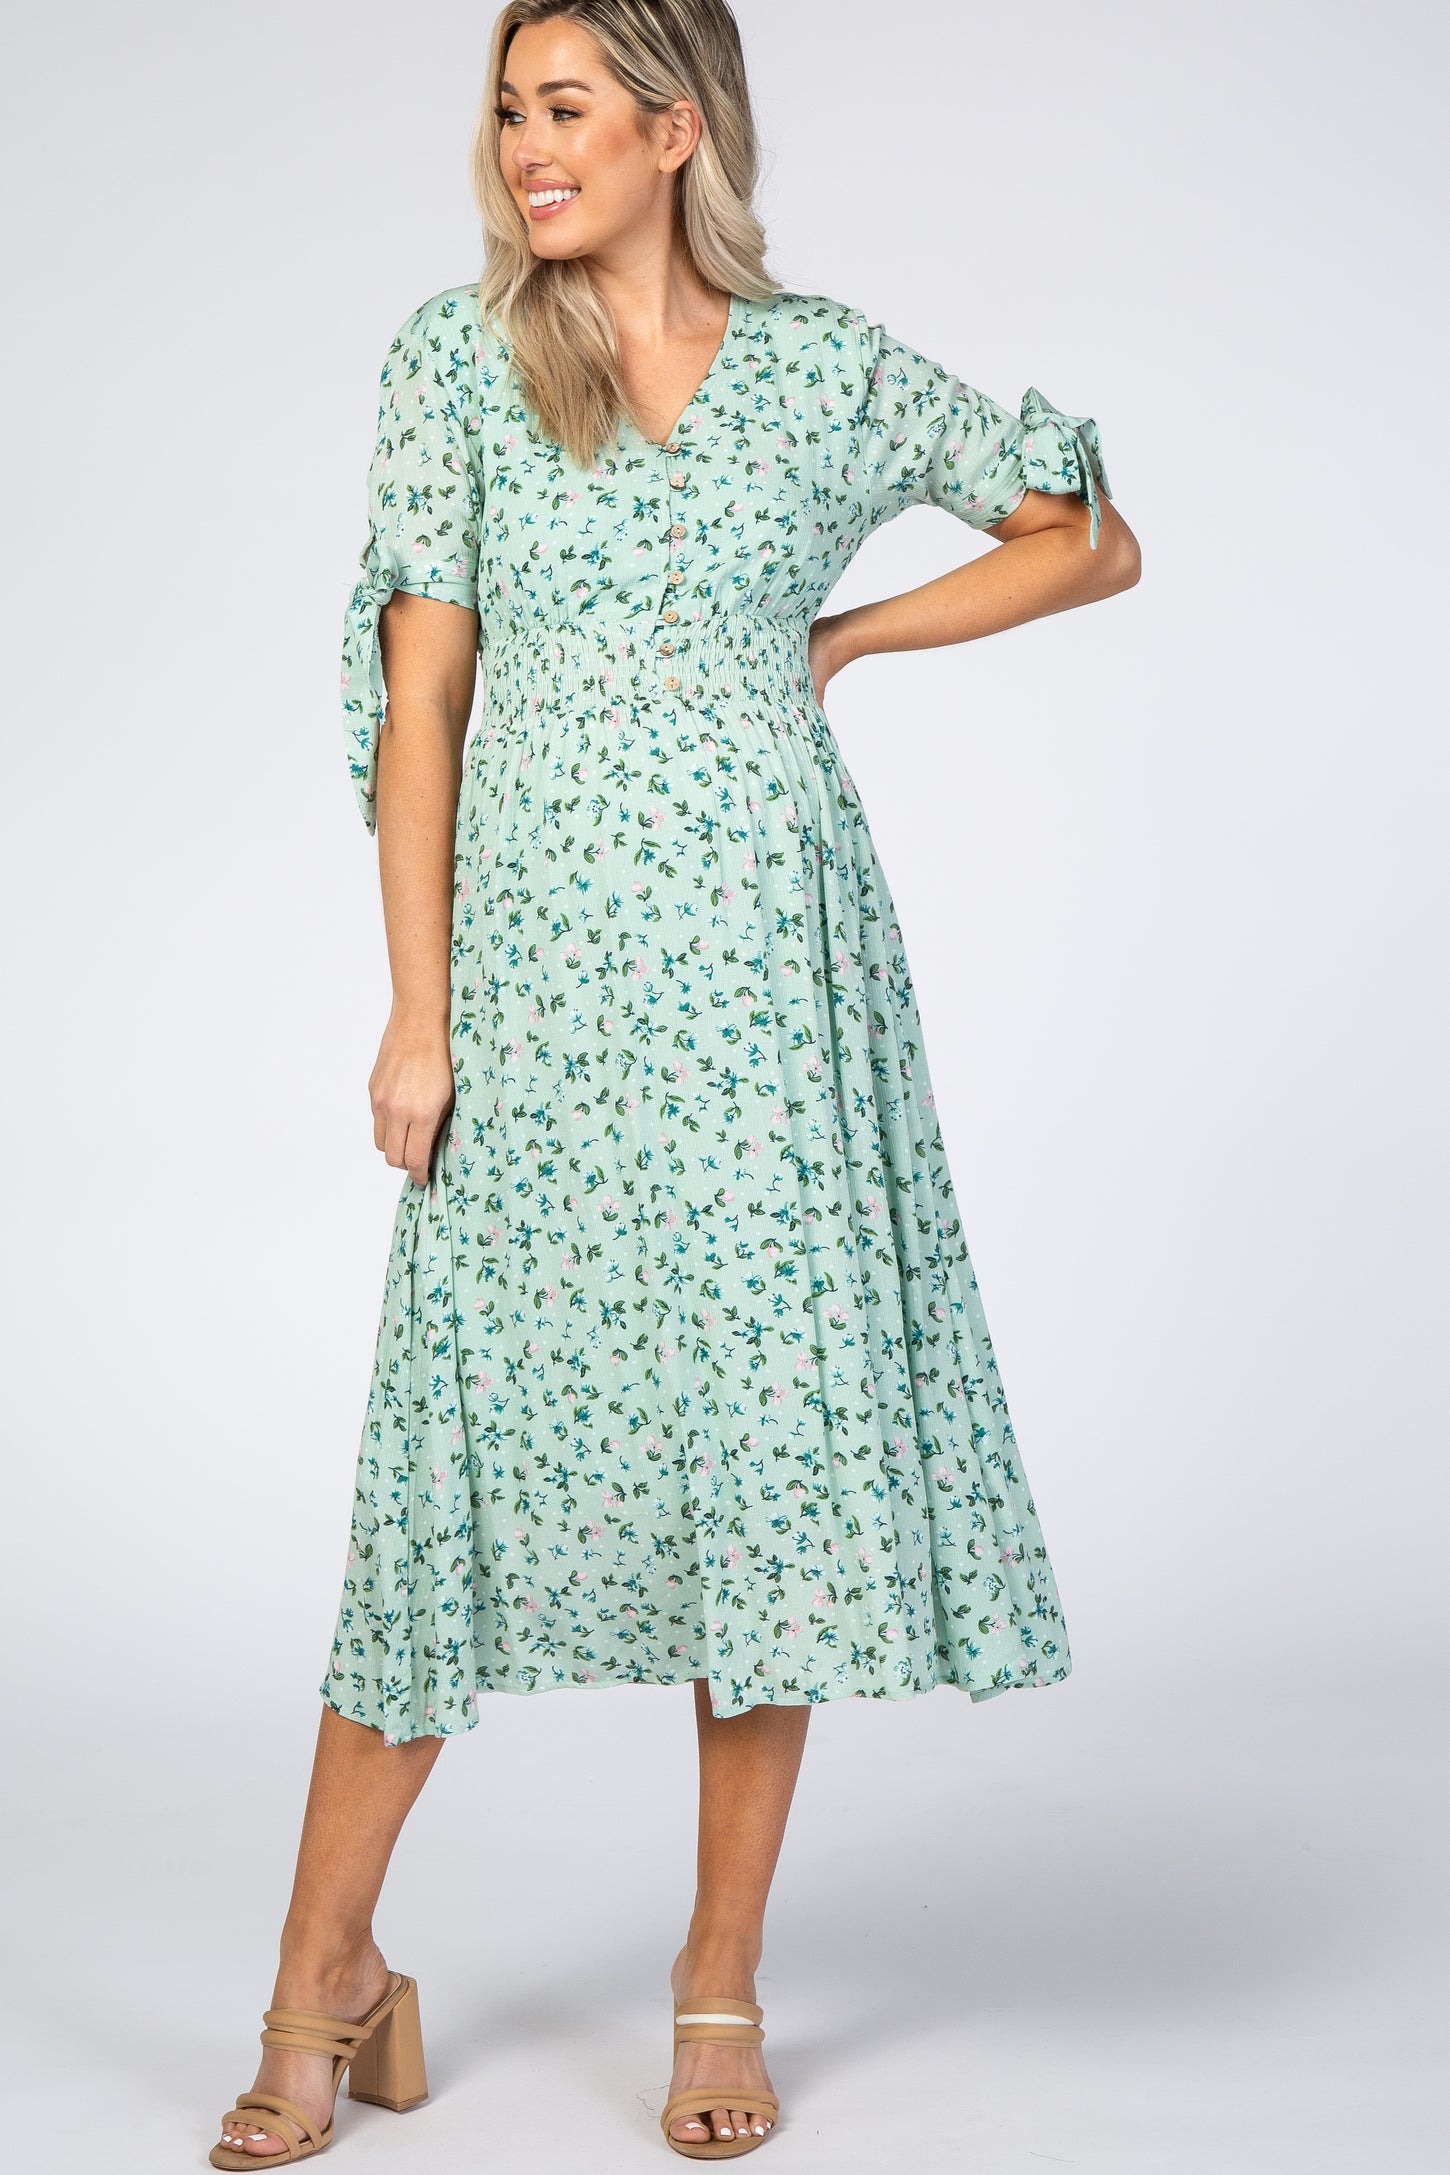 Mint Green Floral Tie Sleeve Maternity Midi Dress